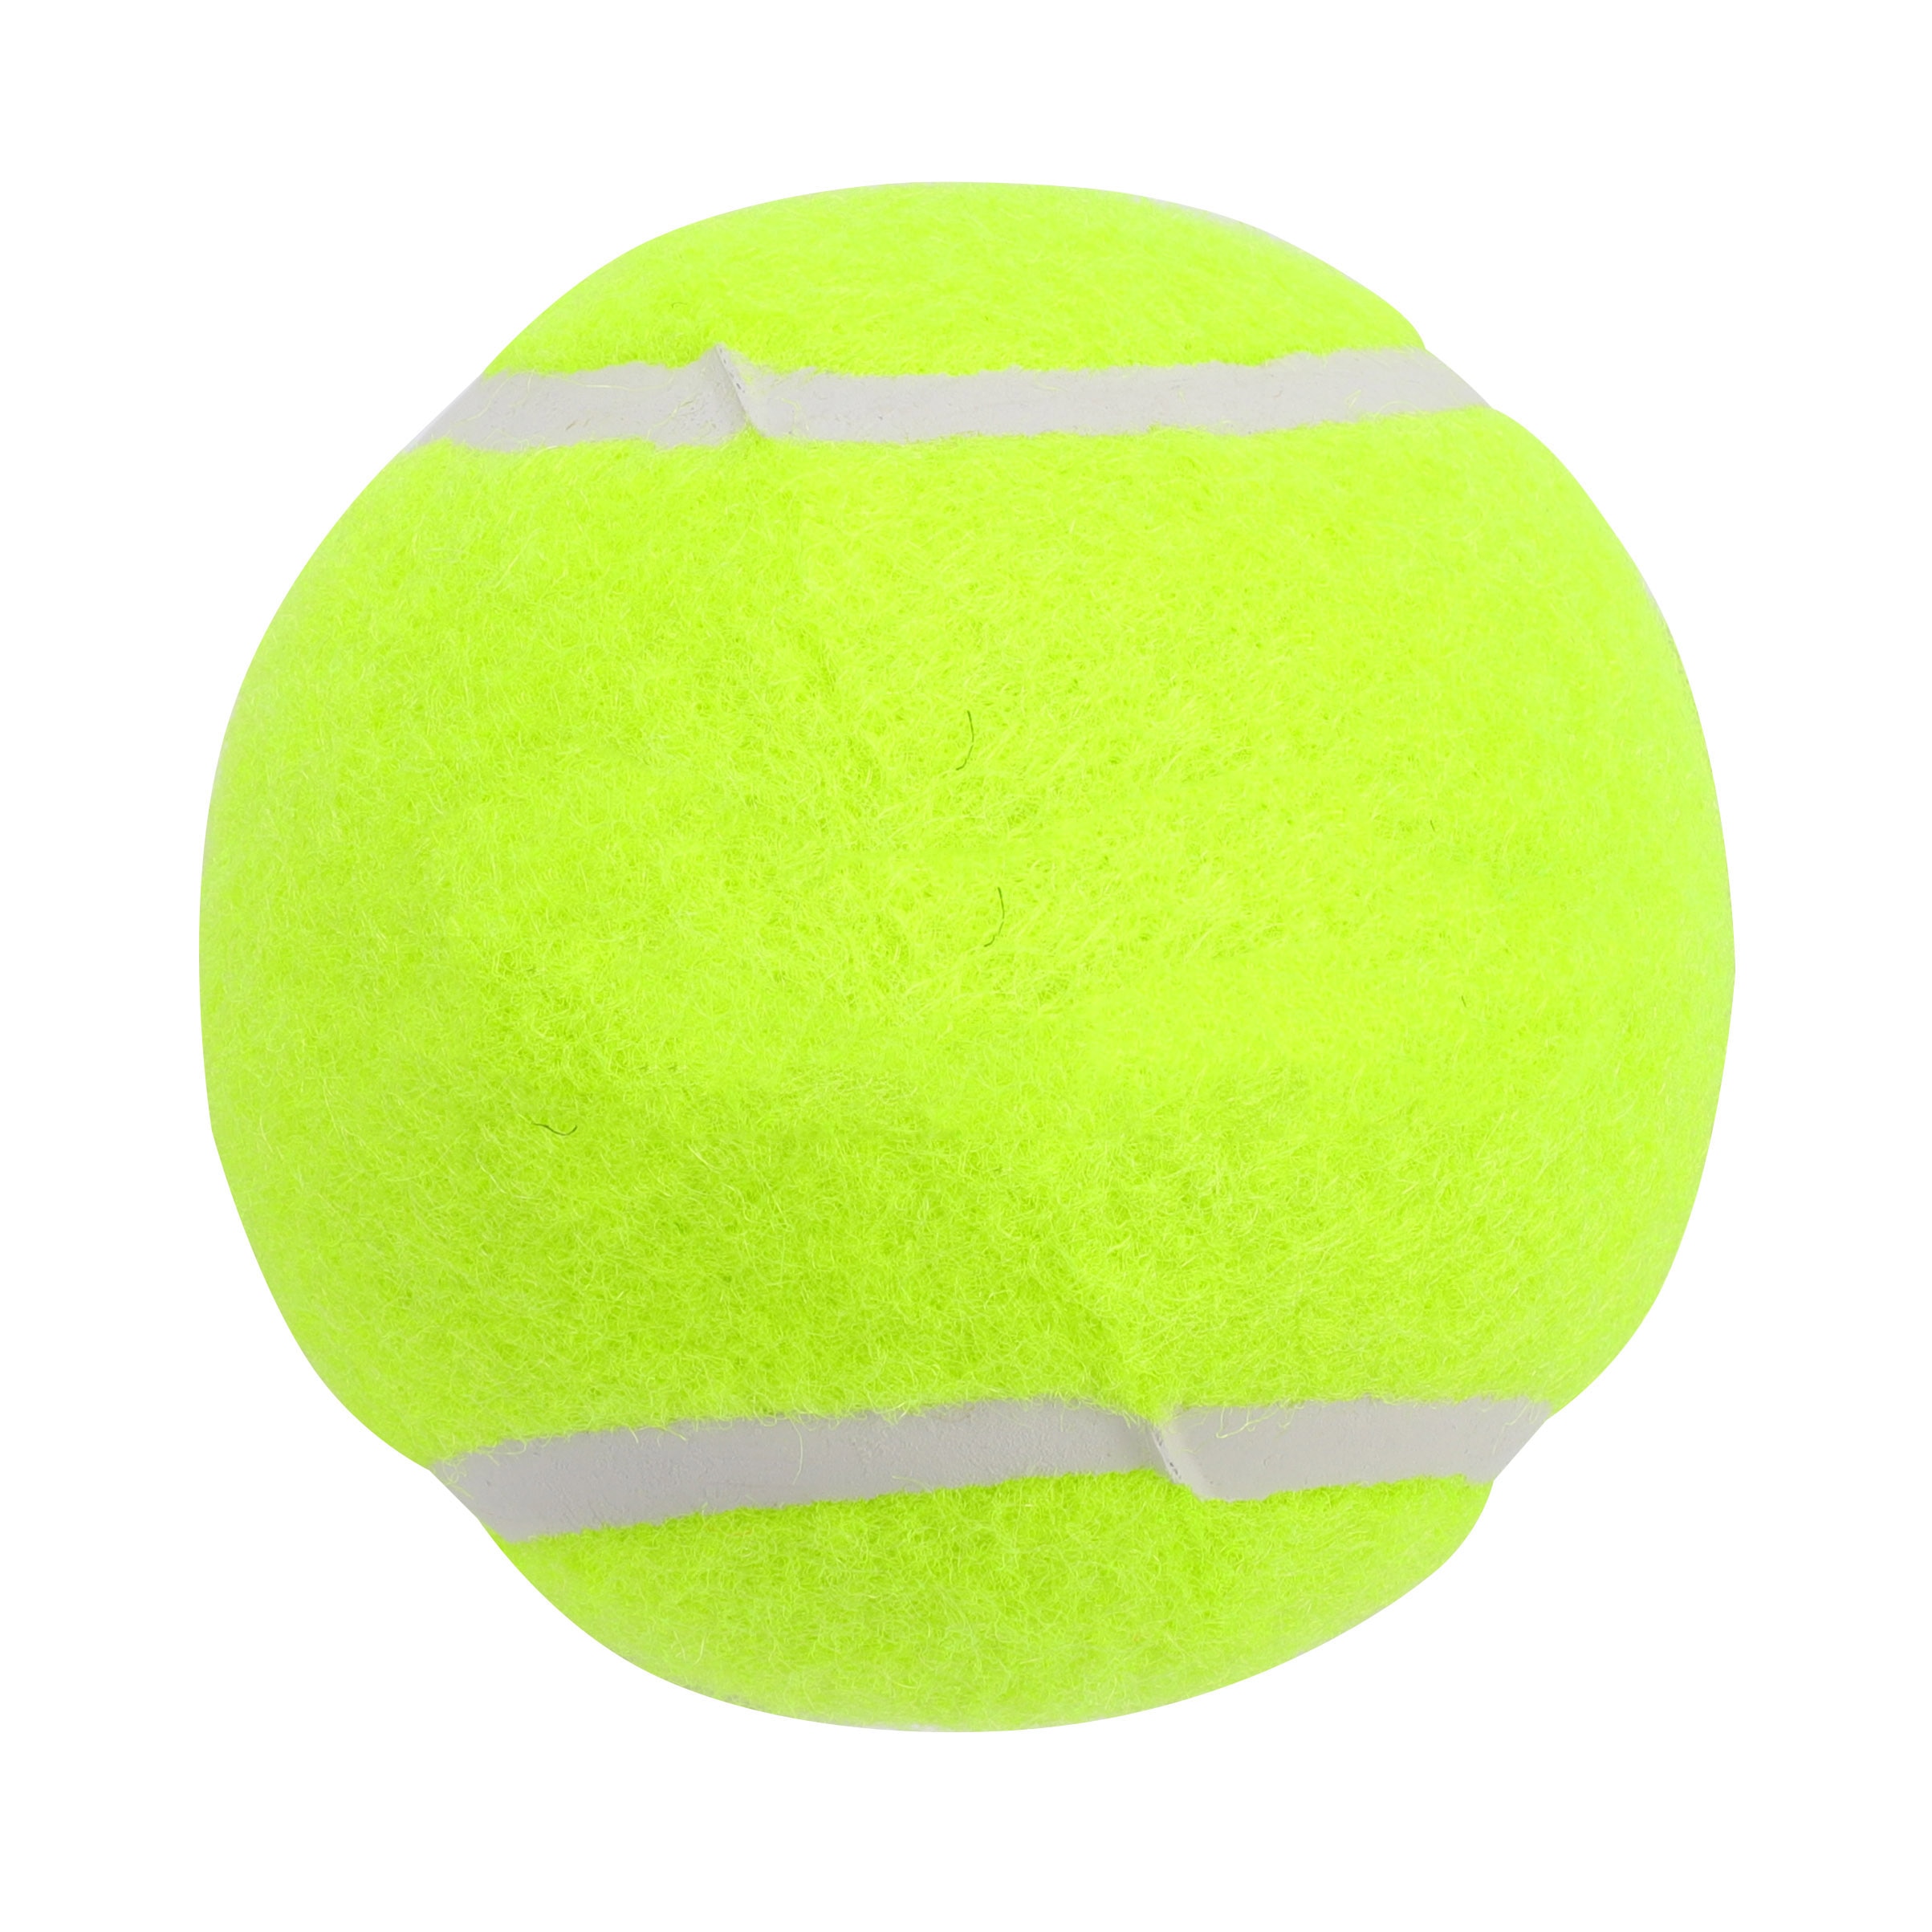 3 stk gummi tennisbold høj modstandsdygtighed holdbar tennisøvelsesbold til skoleklubbens konkurrencetræningsøvelser